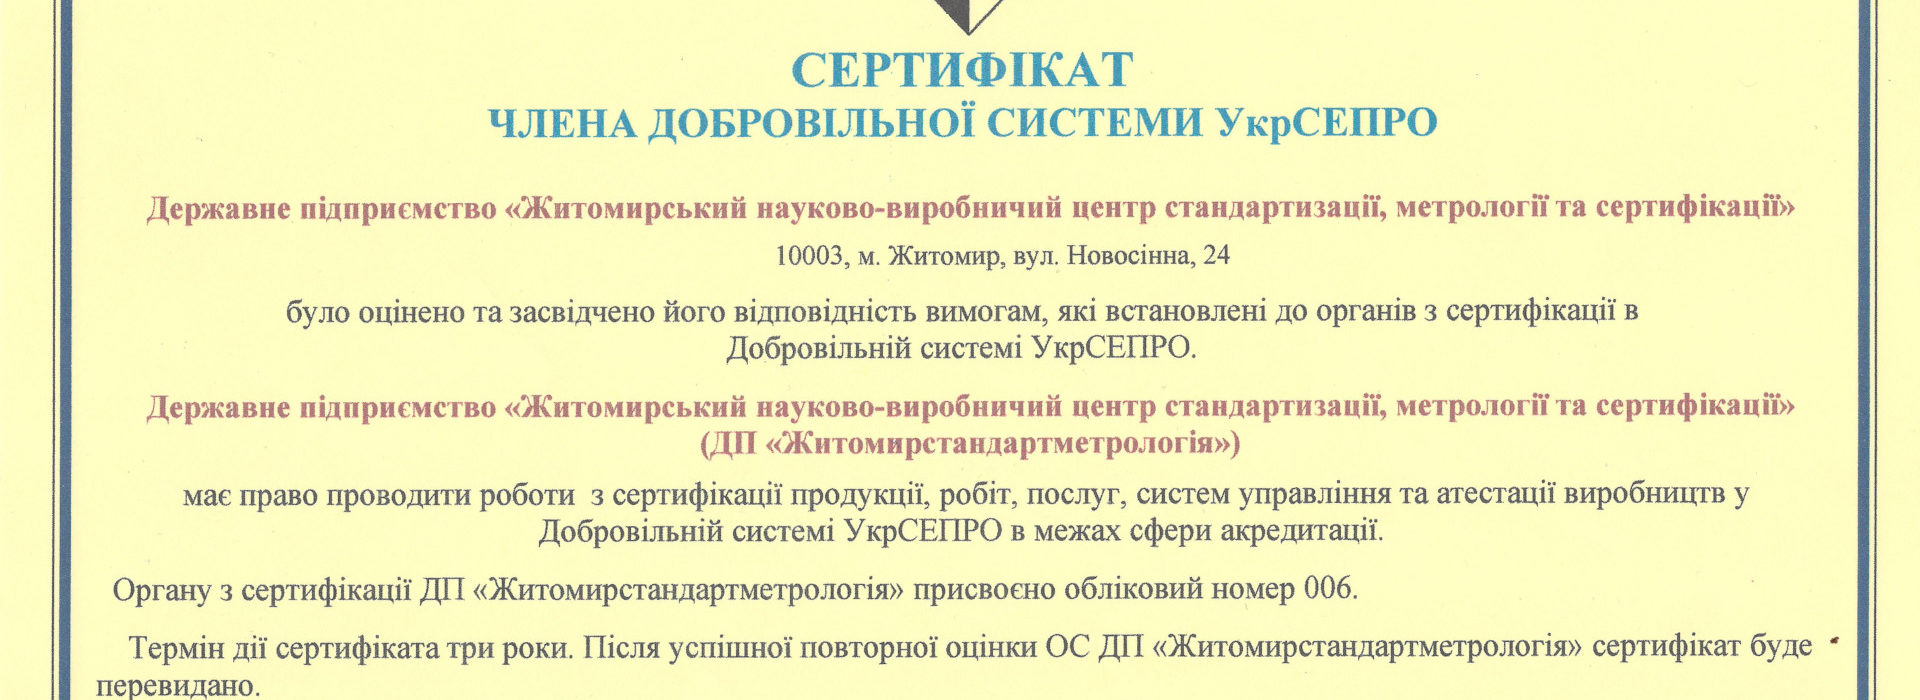 Сертифікація в Добровільній системі УкрСЕПРО